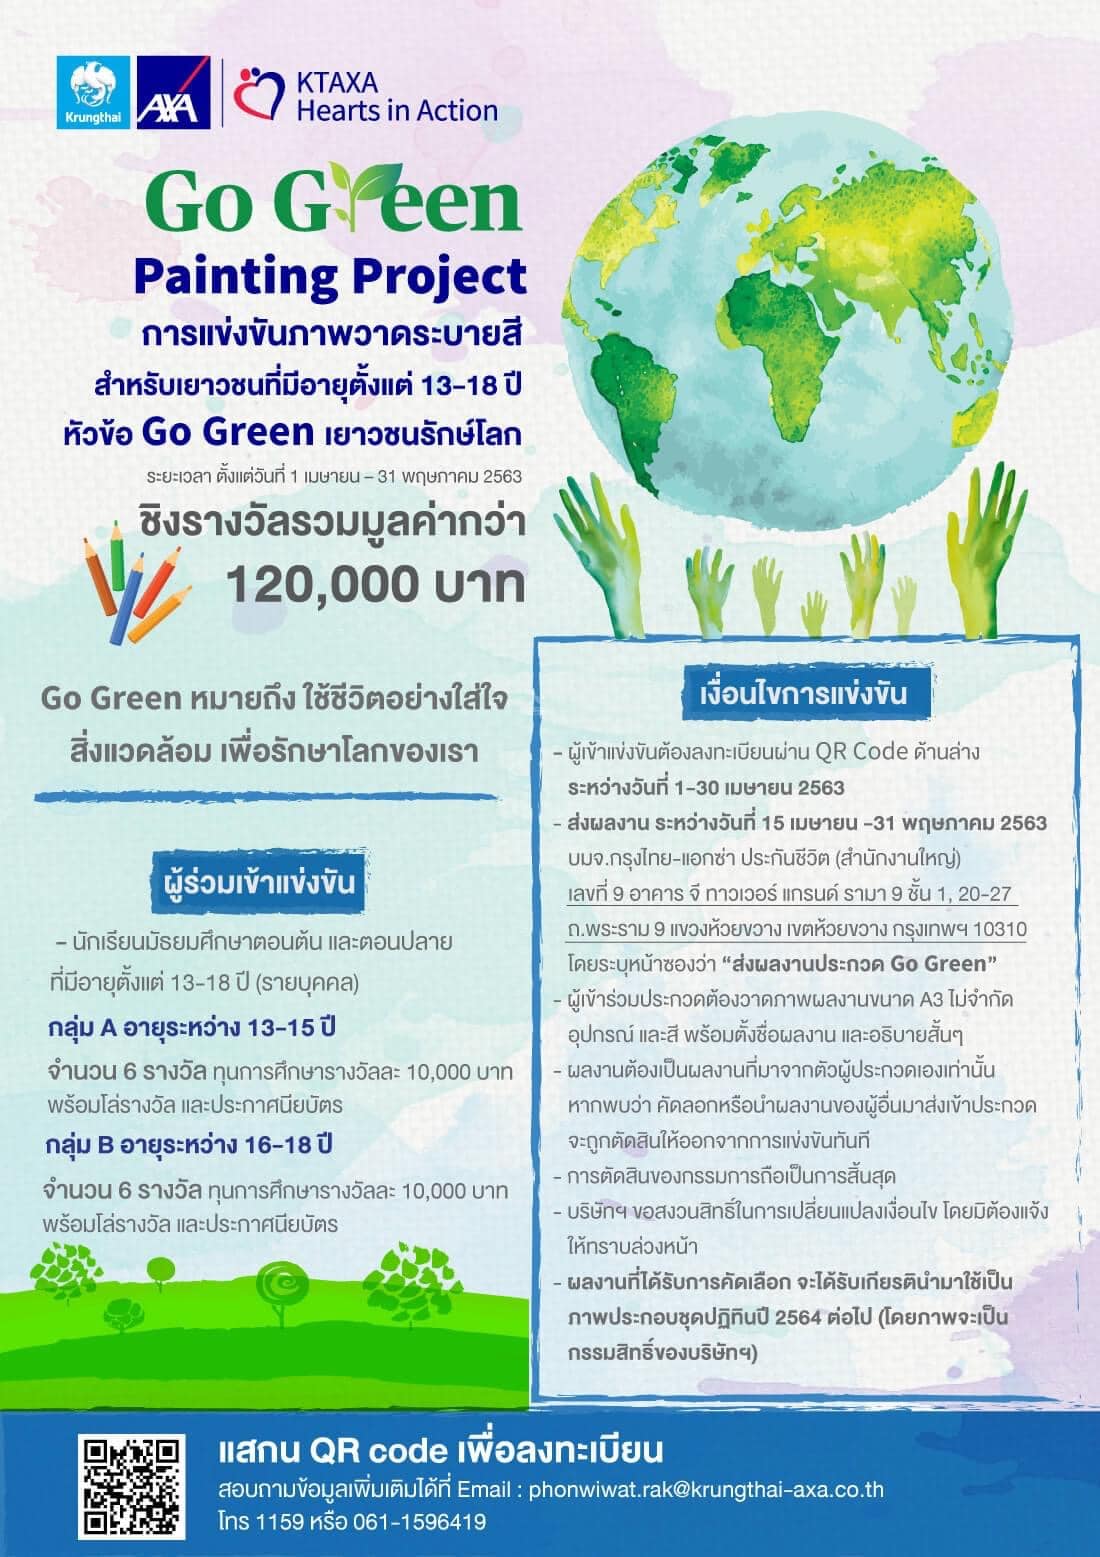 ขอเชิญเข้าร่วมประกวดภาพวาดระบายสี หัวข้อ “Go Green เยาวชนรักษ์โลก กับกรุงไทย-แอกซ่า ประกันชีวิต” ชิงเงินรางวัลรวมมูลค่ากว่า 120,000 บาท